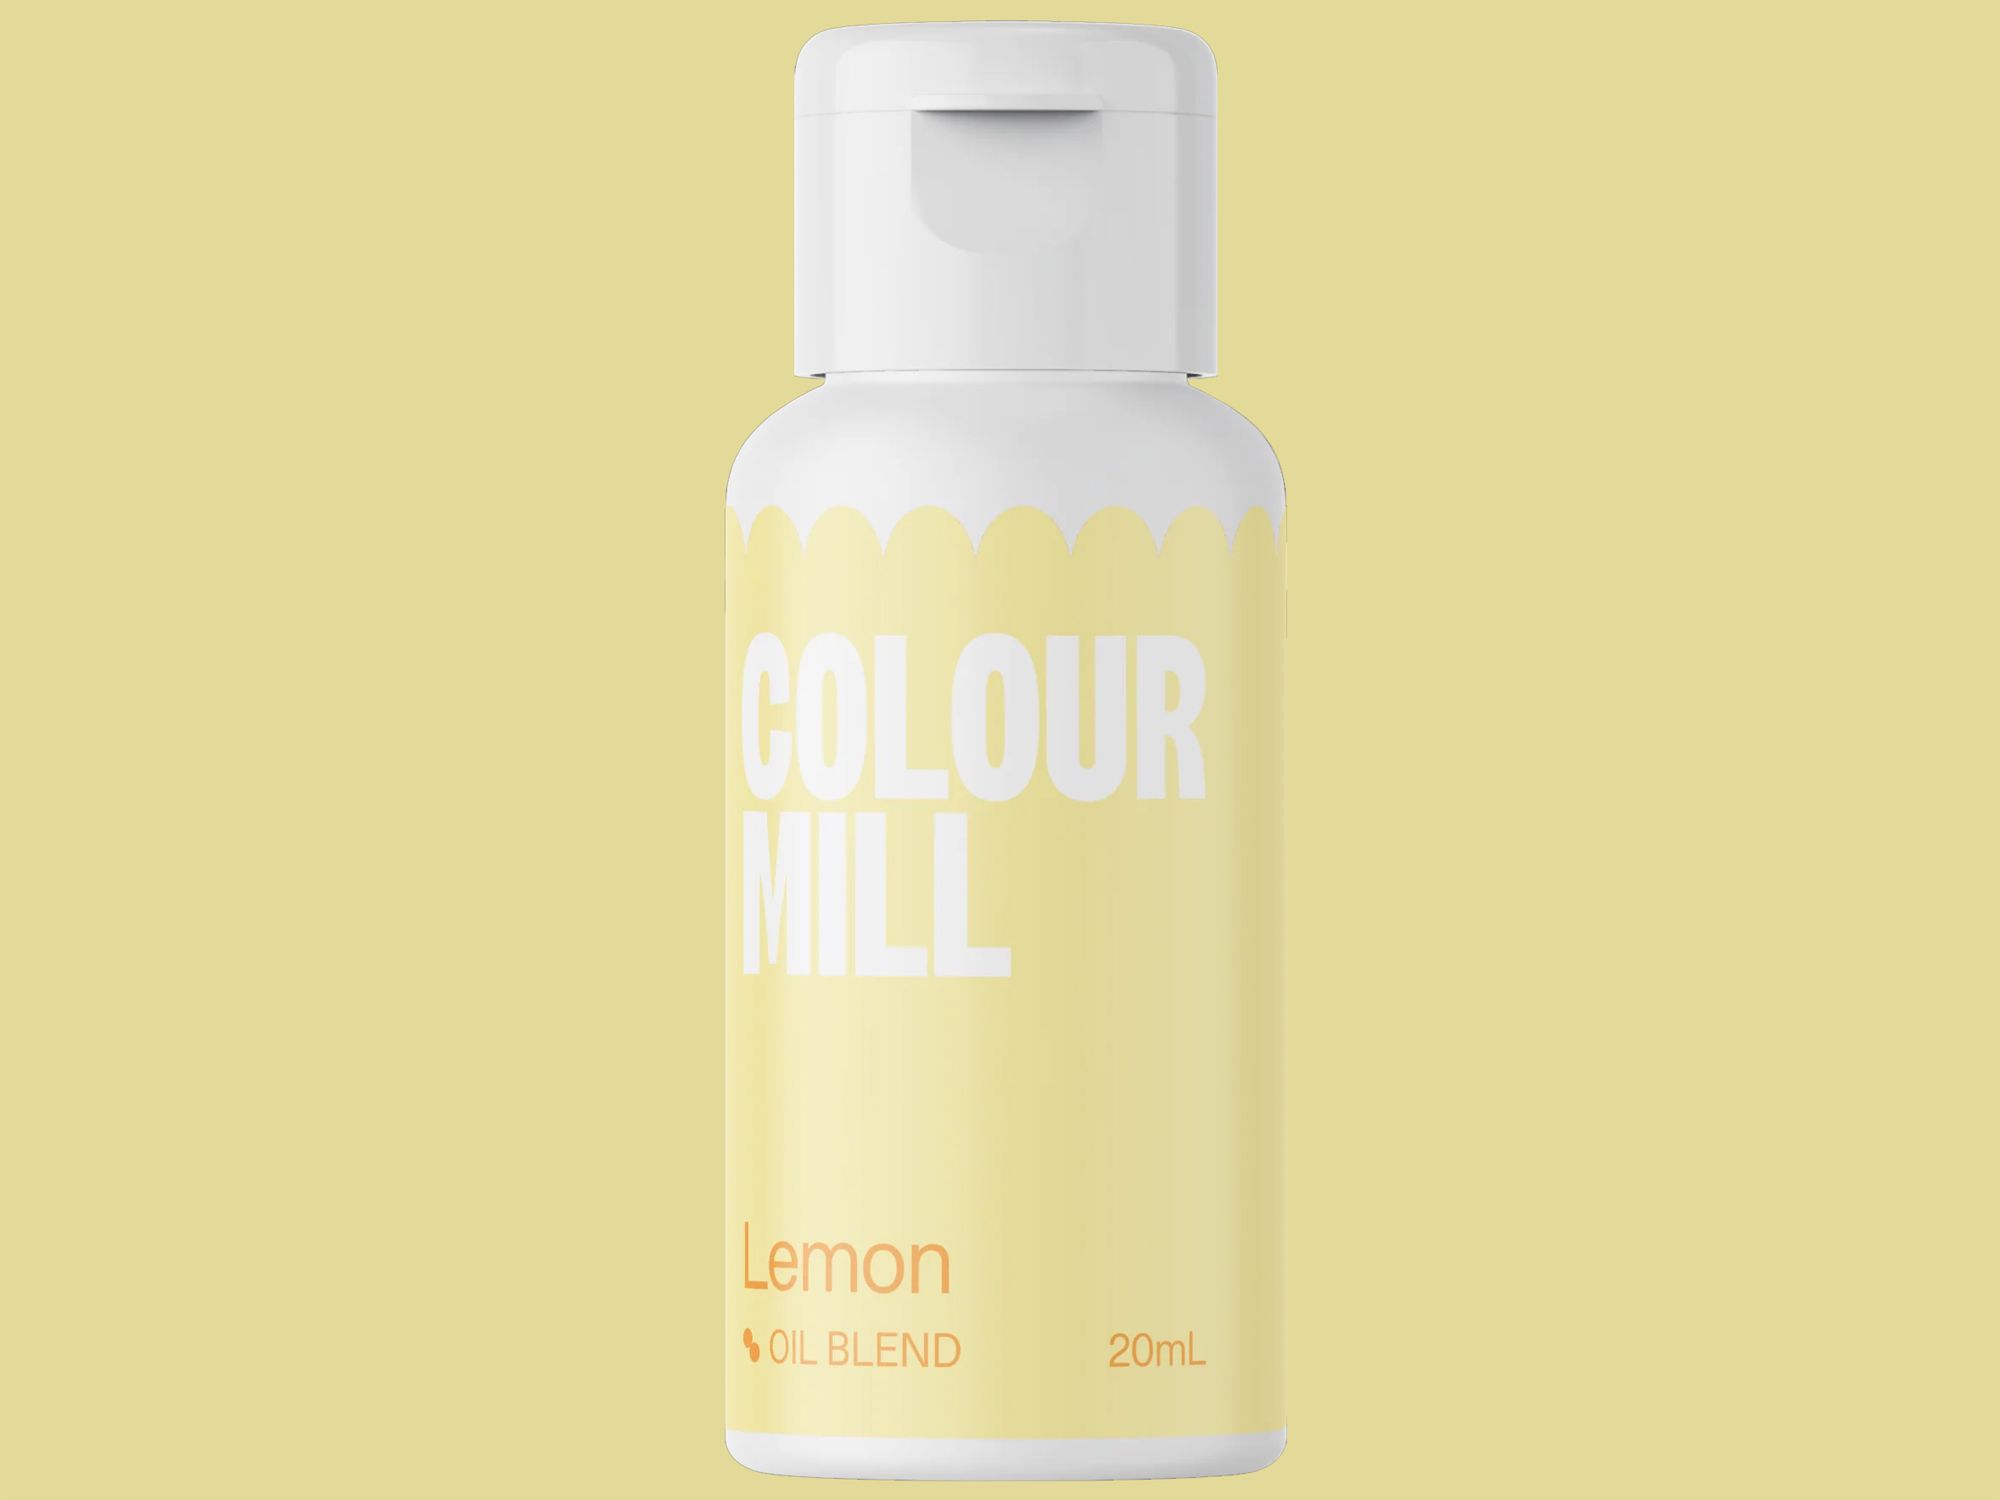 Colour Mill Lemon (Oil Blend) 20ml